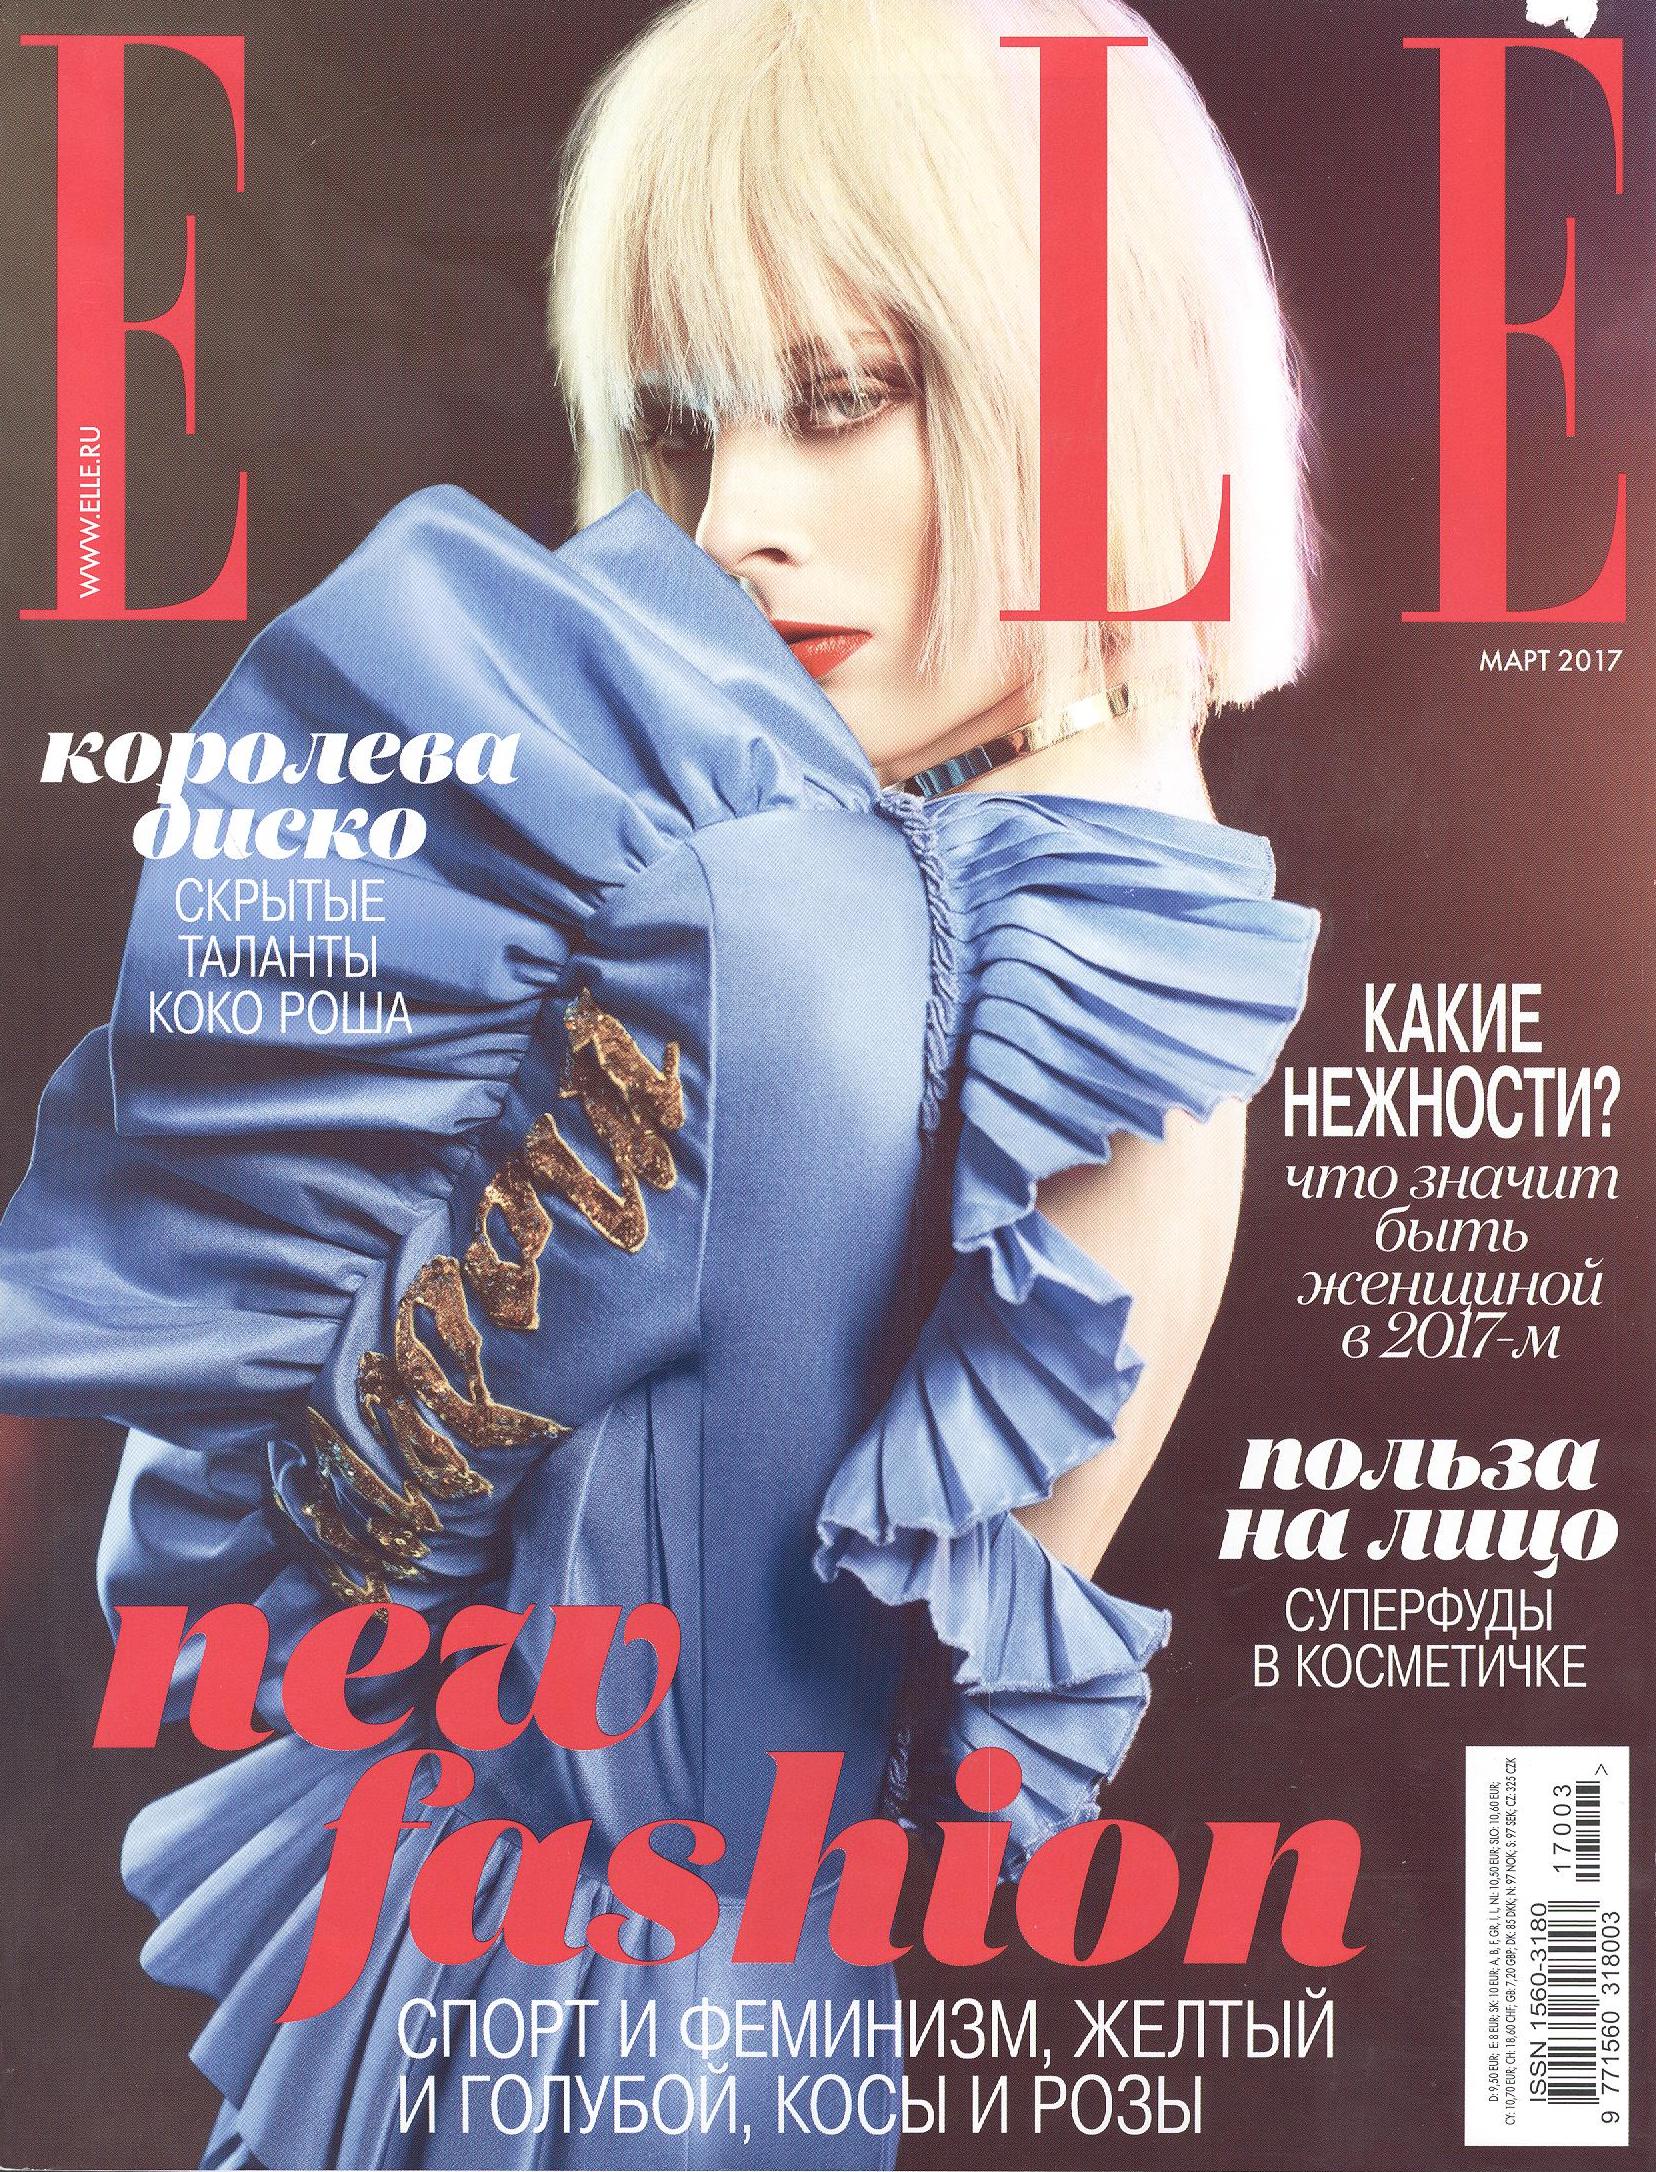 Обложка 2017. Elle Россия обложки. Обложка журнала elle 2017-. Elle журнал 2003. Журнал elle март.